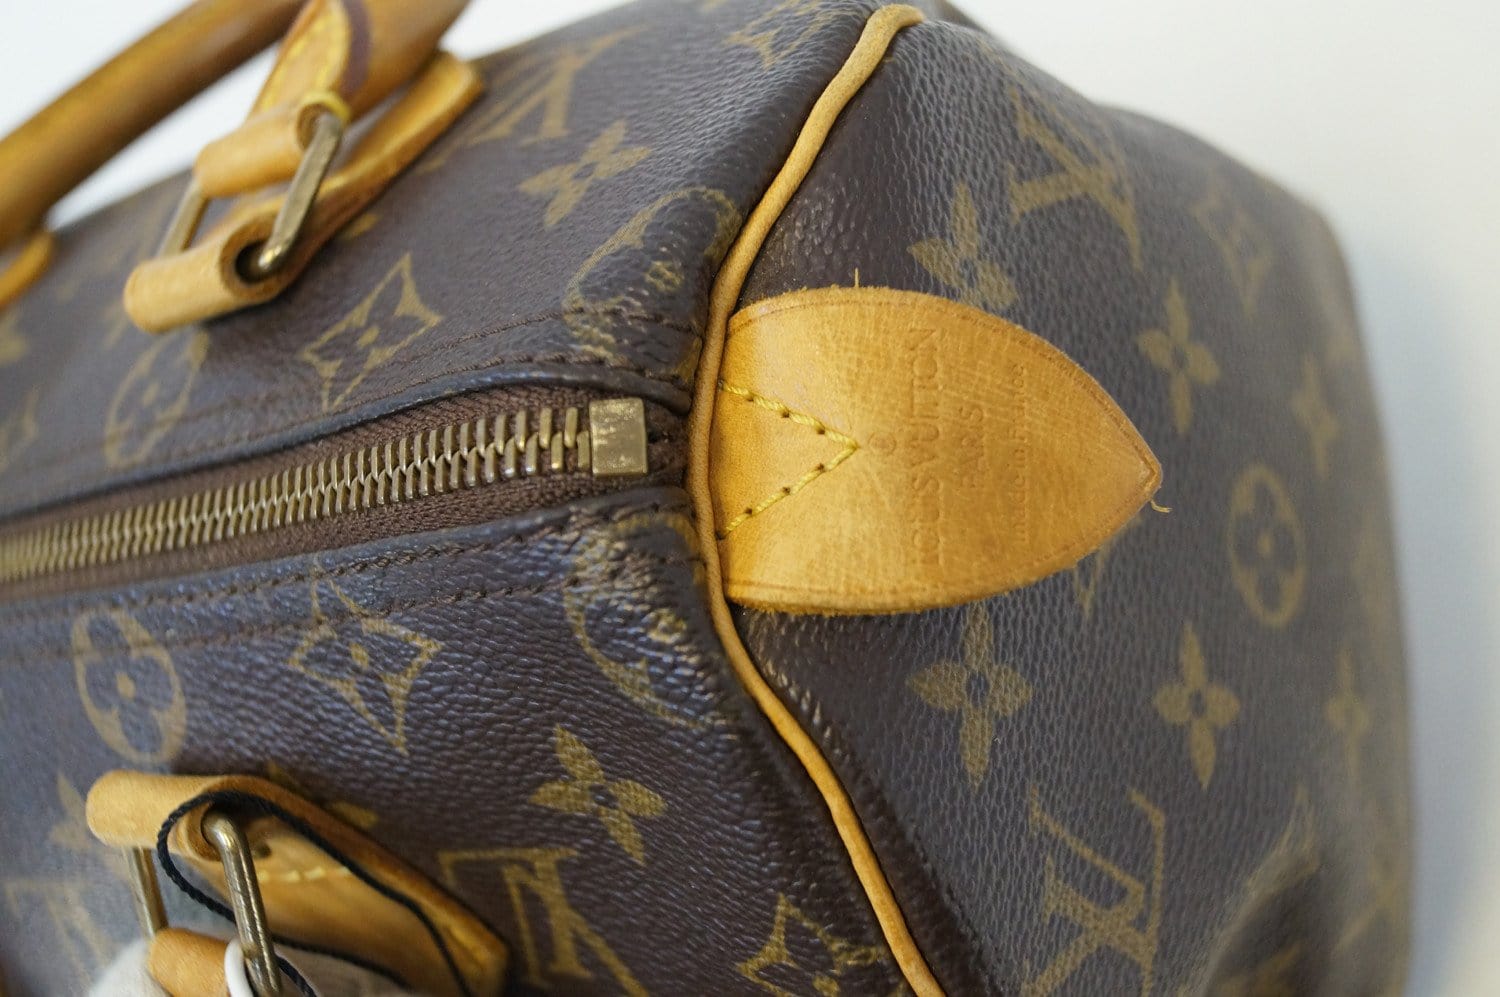 Buy [Bag] LOUIS VUITTON Louis Vuitton Monogram Palace Handbag Tote